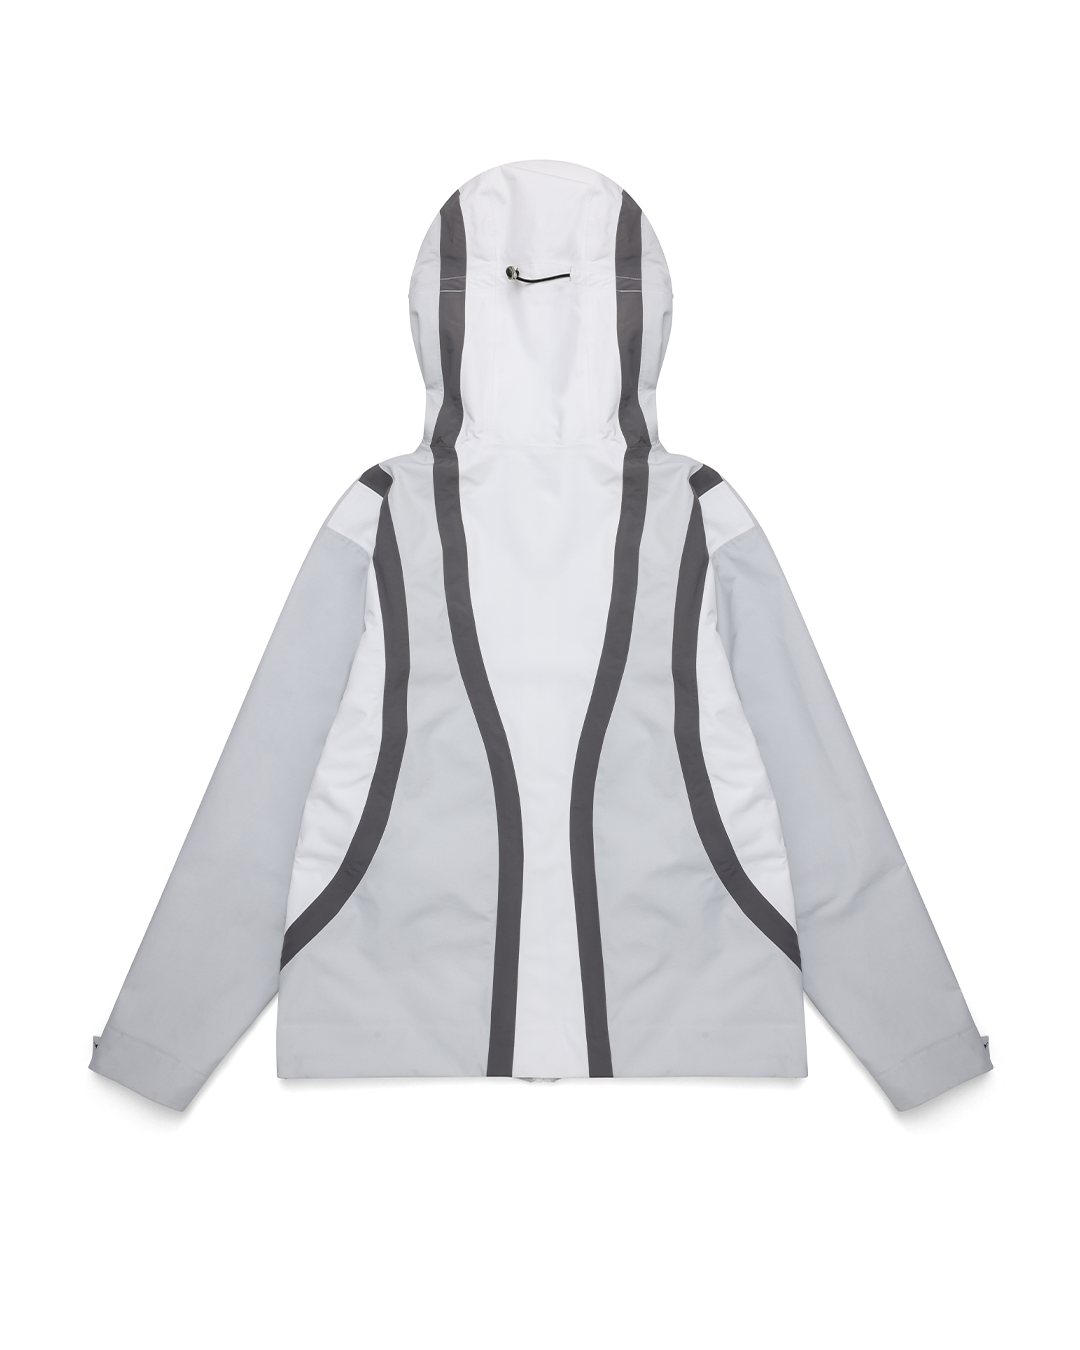 Flow Waterproof Jacket - White/Grey